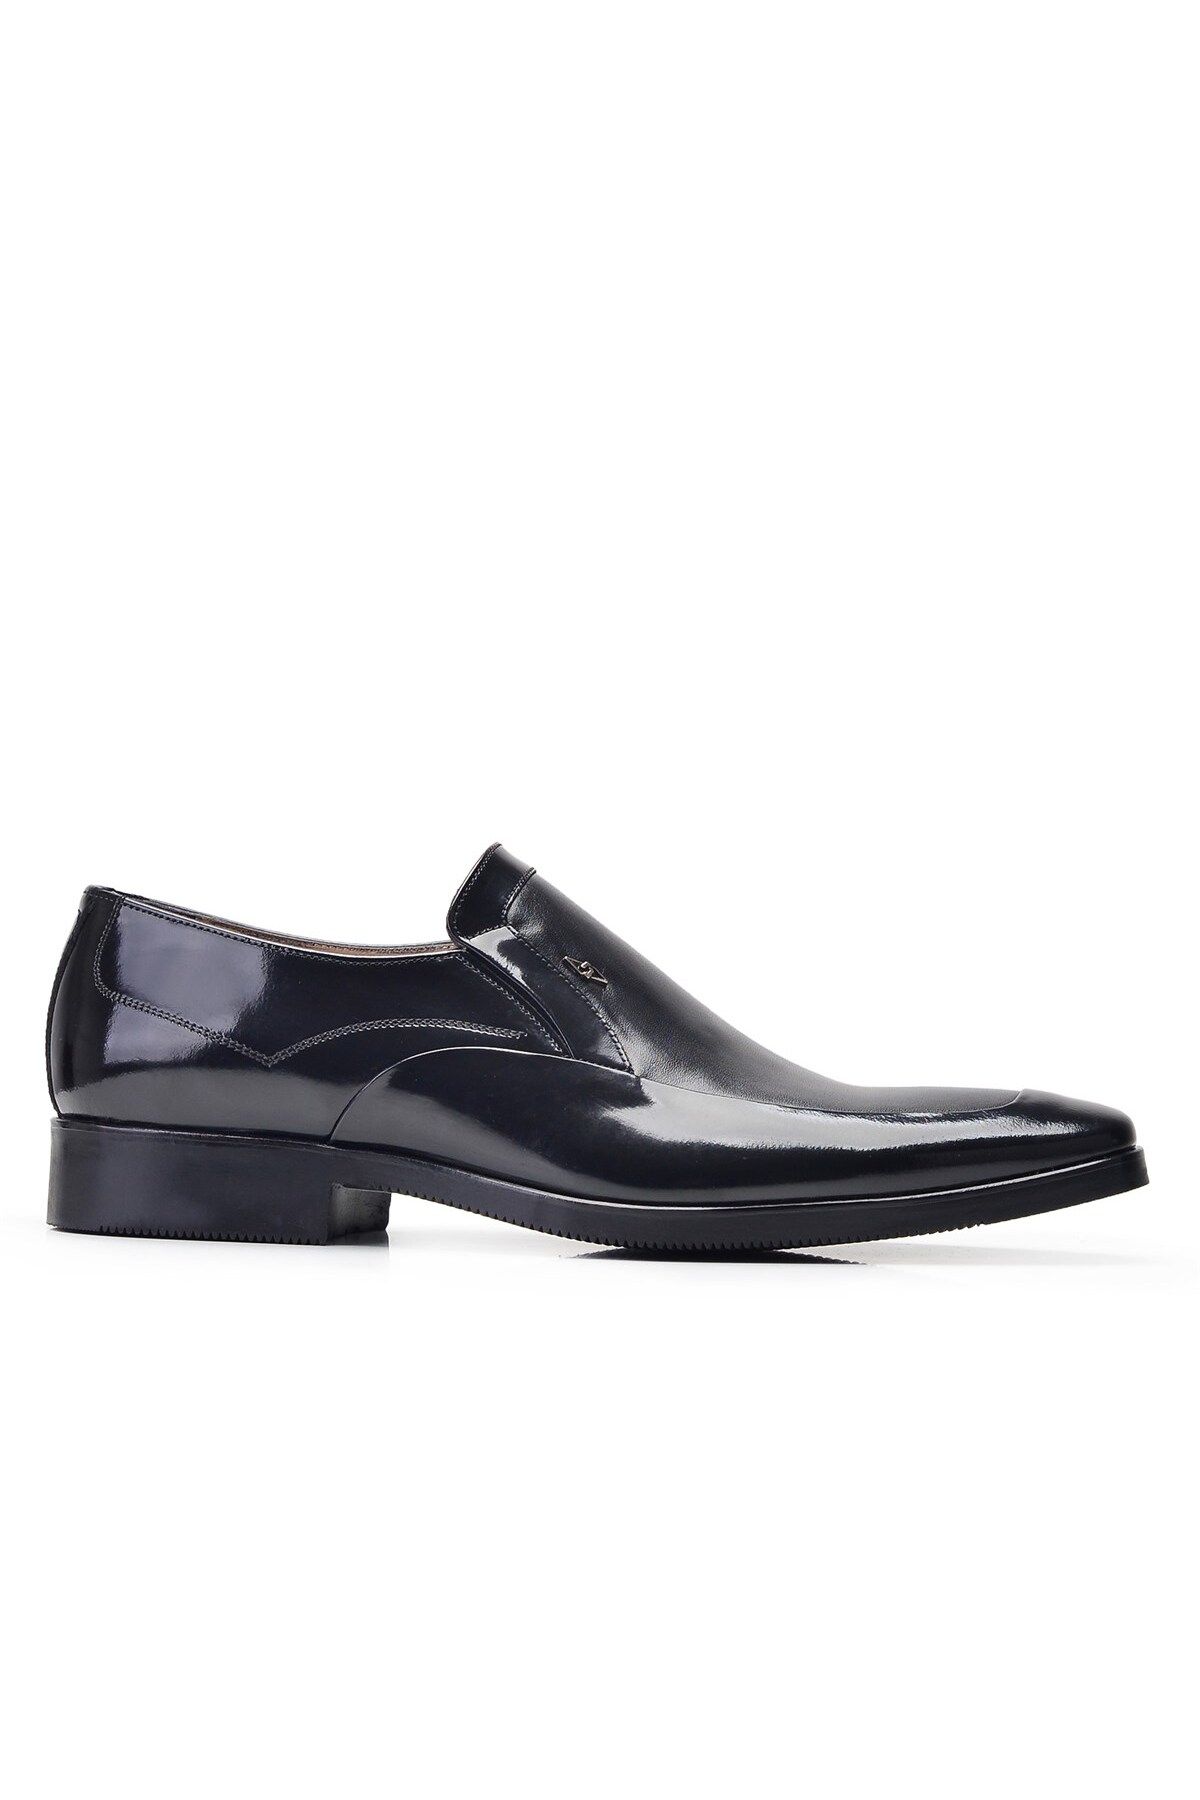 Nevzat Onay Siyah Klasik Loafer Erkek Ayakkabı -11851-